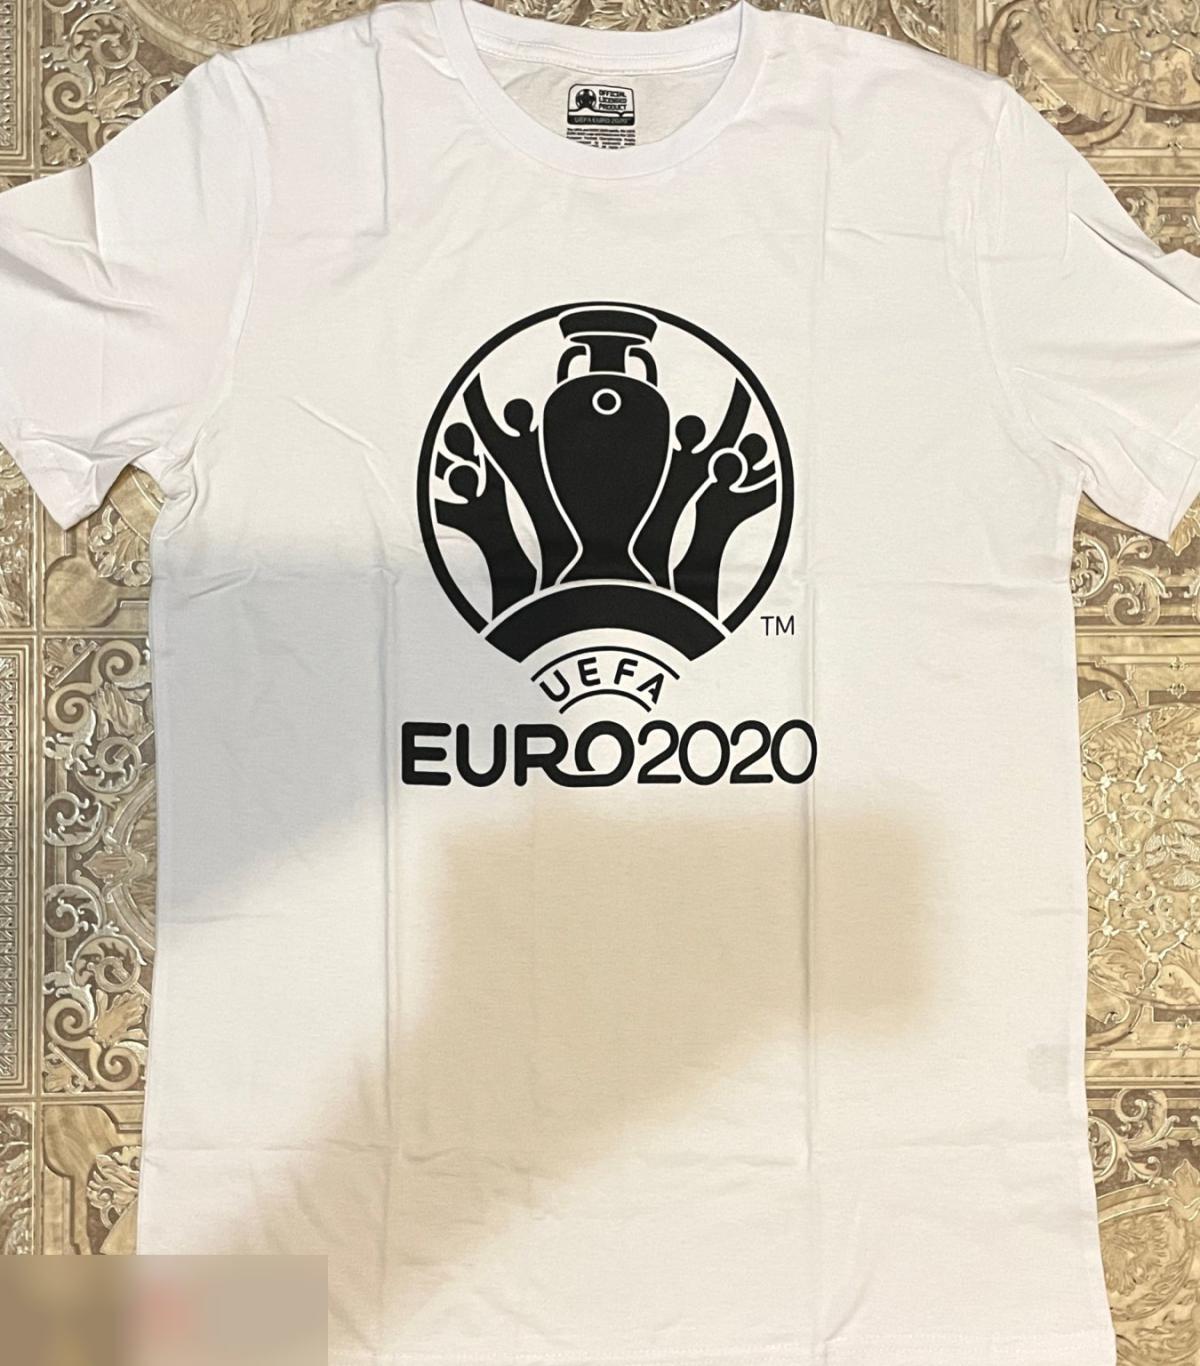 ОПТОВЫЙ ЛОТ! 100 мужских футболок ЕВРО 2020 (S, M). 3